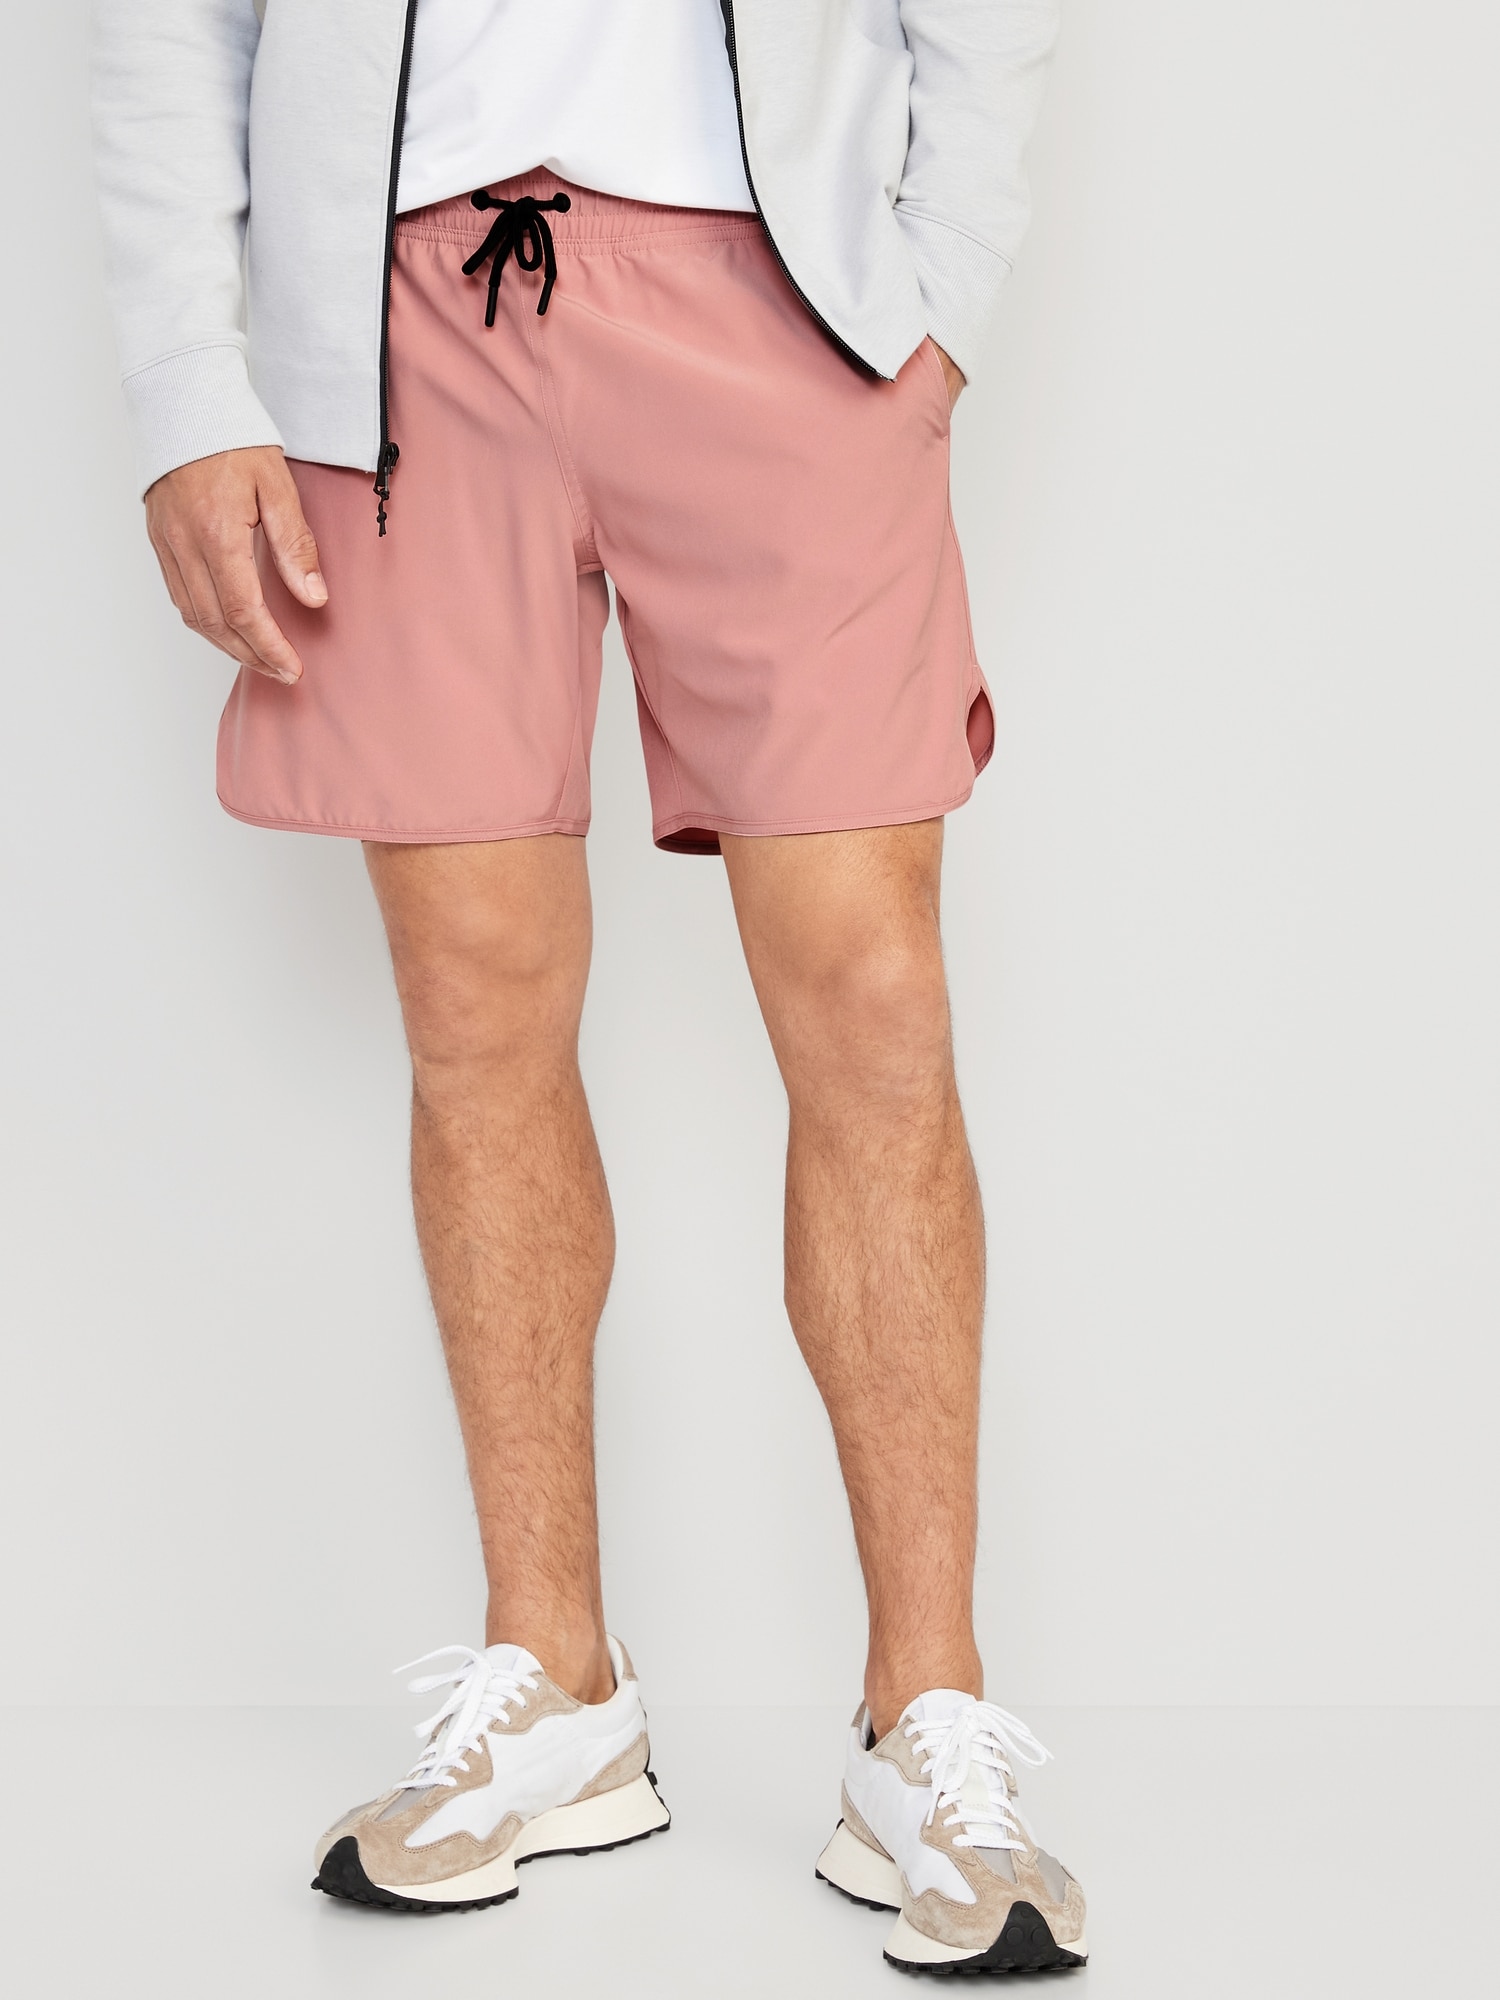 Valentines day polyester spandex shorts